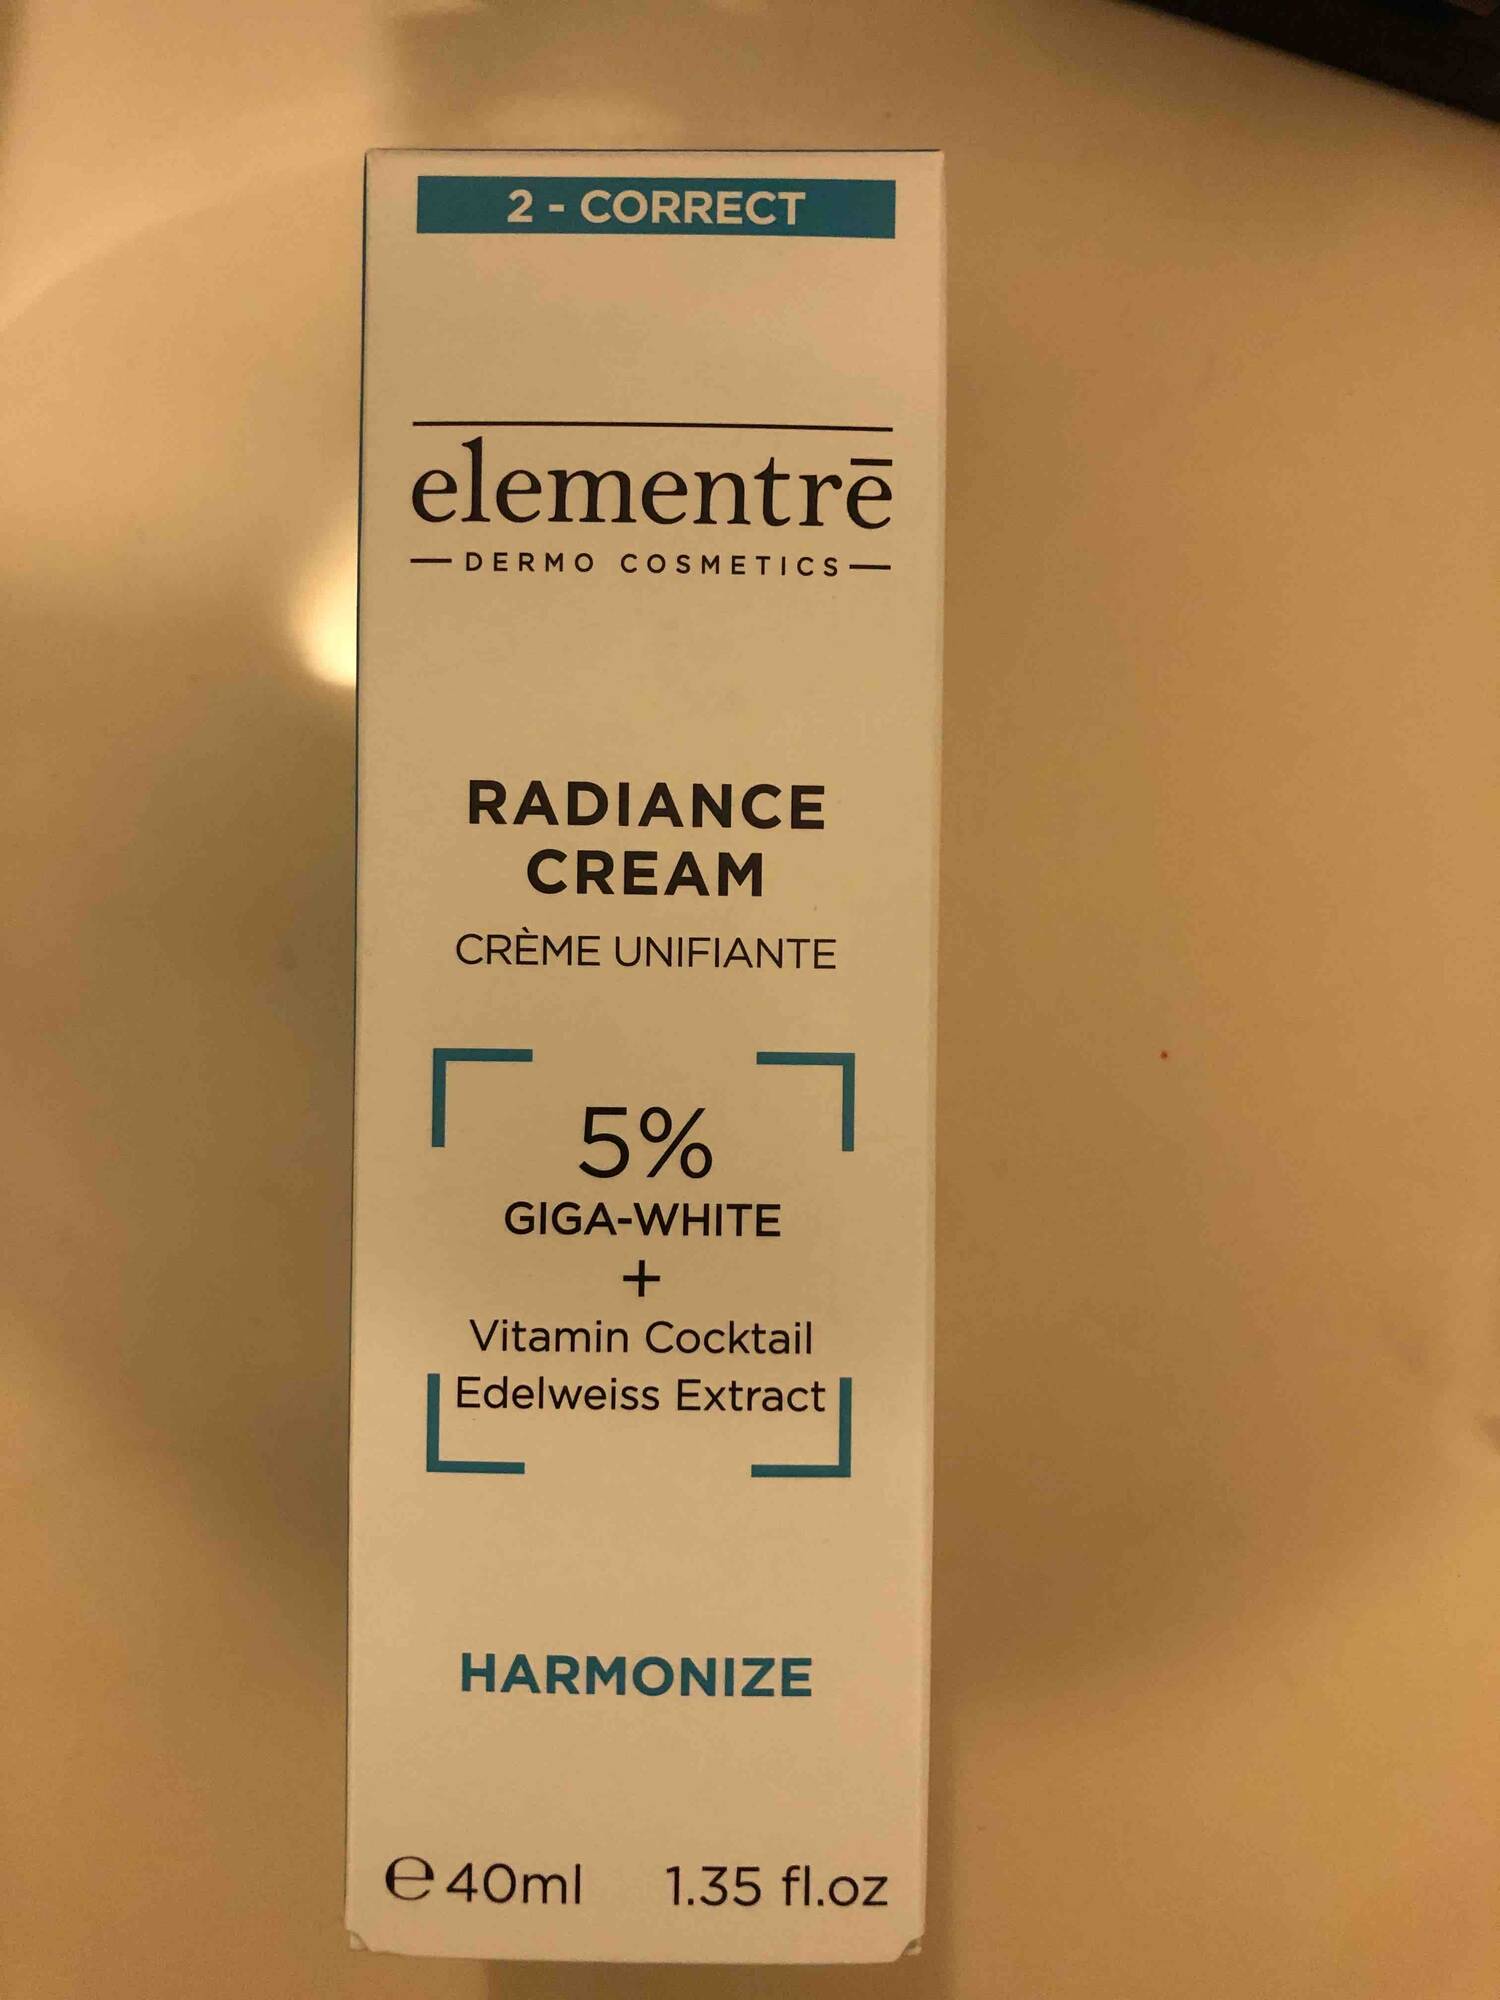 ELEMENTRE - Hormonize - Crème unifiante